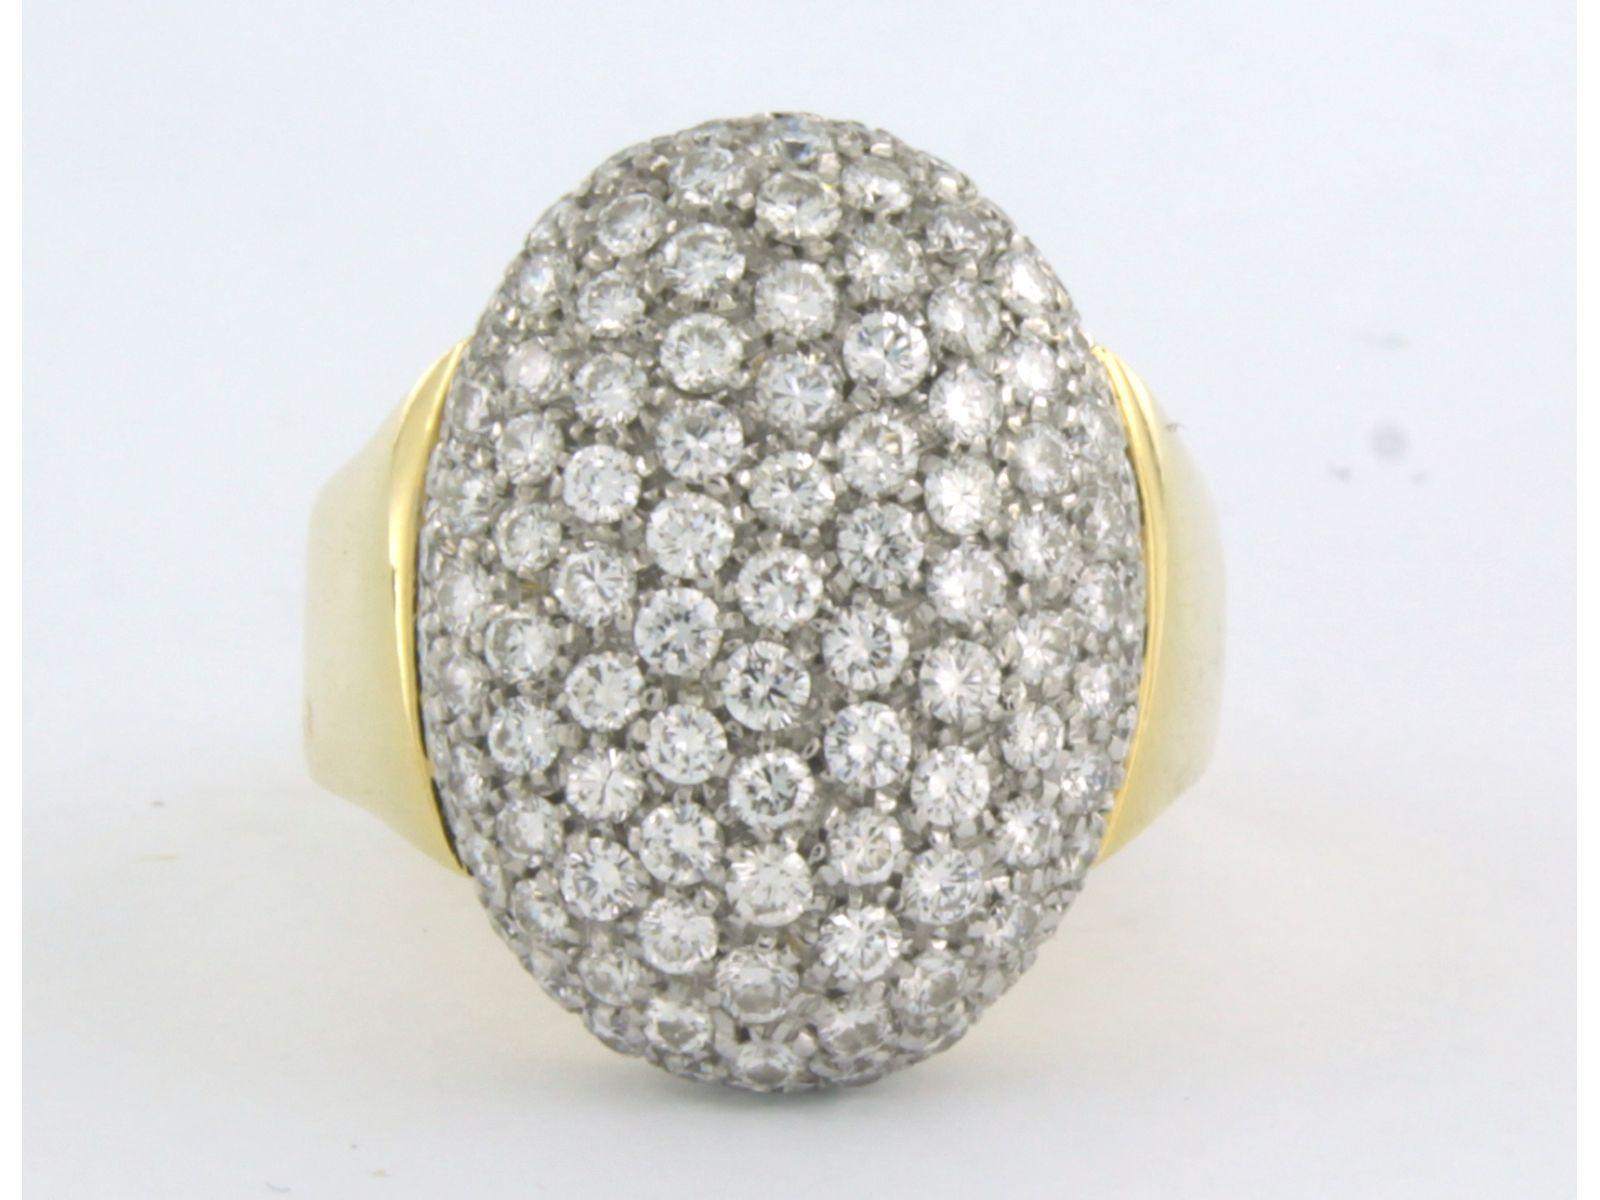 Bicolor-Ring aus 18 Karat, besetzt mit Diamanten im Brillantschliff bis zu 2,50 ct - F/G - VS/SI - Ringgröße U.S. 9,25 - EU.19,25 (61)

ausführliche Beschreibung

die Oberseite des Rings ist 2.1 cm breit

Gewicht 9,2 Gramm

Ringgröße US 9.25 -